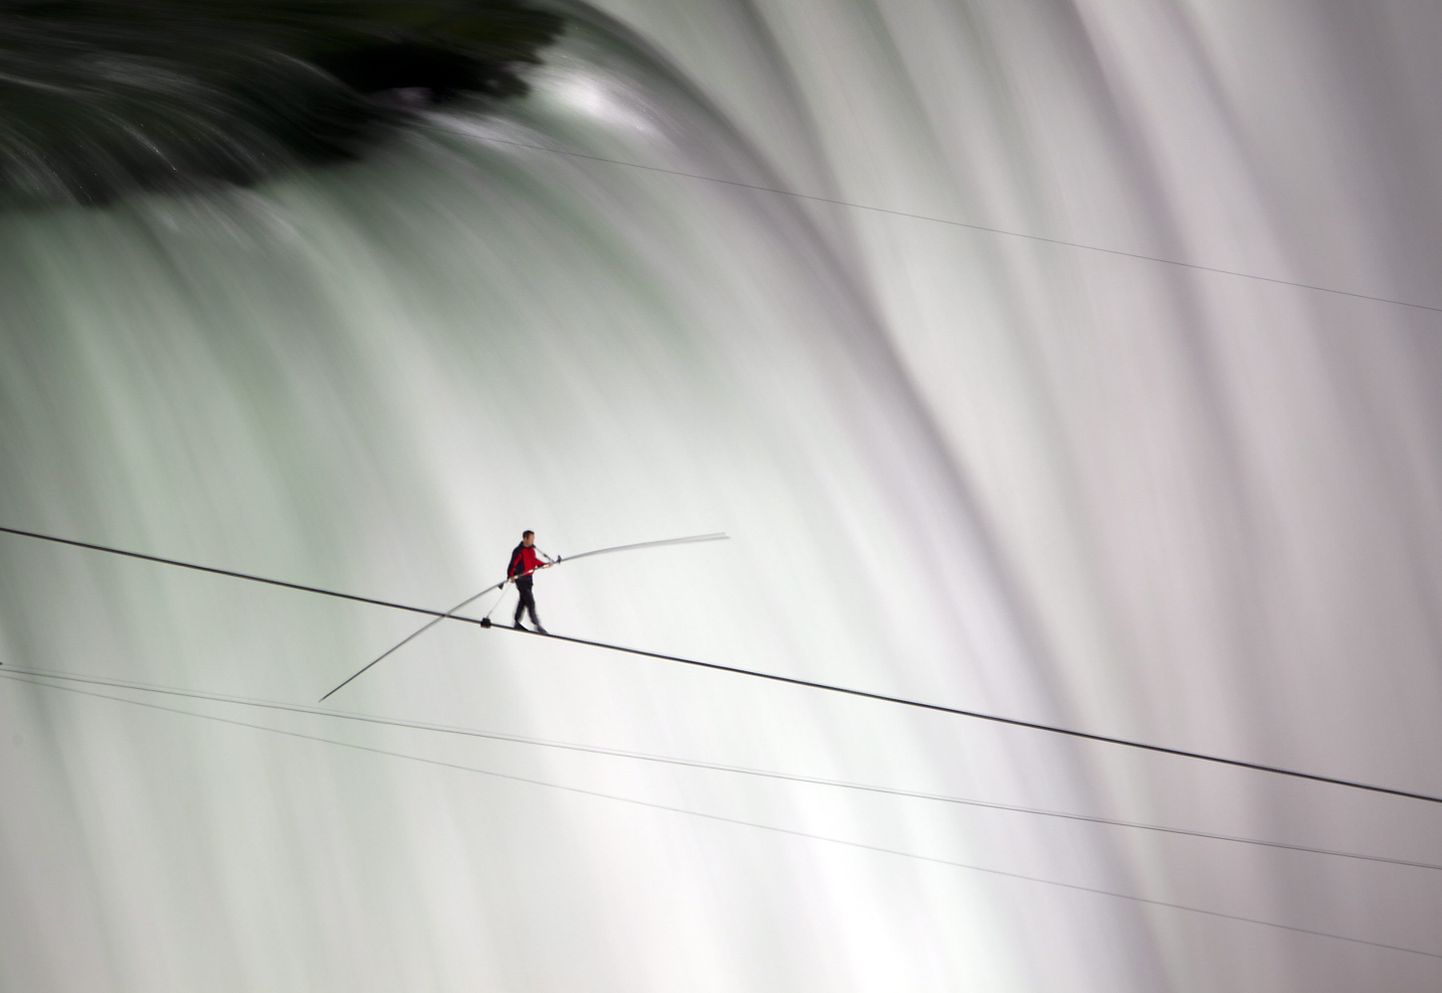 Ameerika akrobaat Nik Wallenda ületas maailmas esimese inimesena Niagara joa kogulaiuses